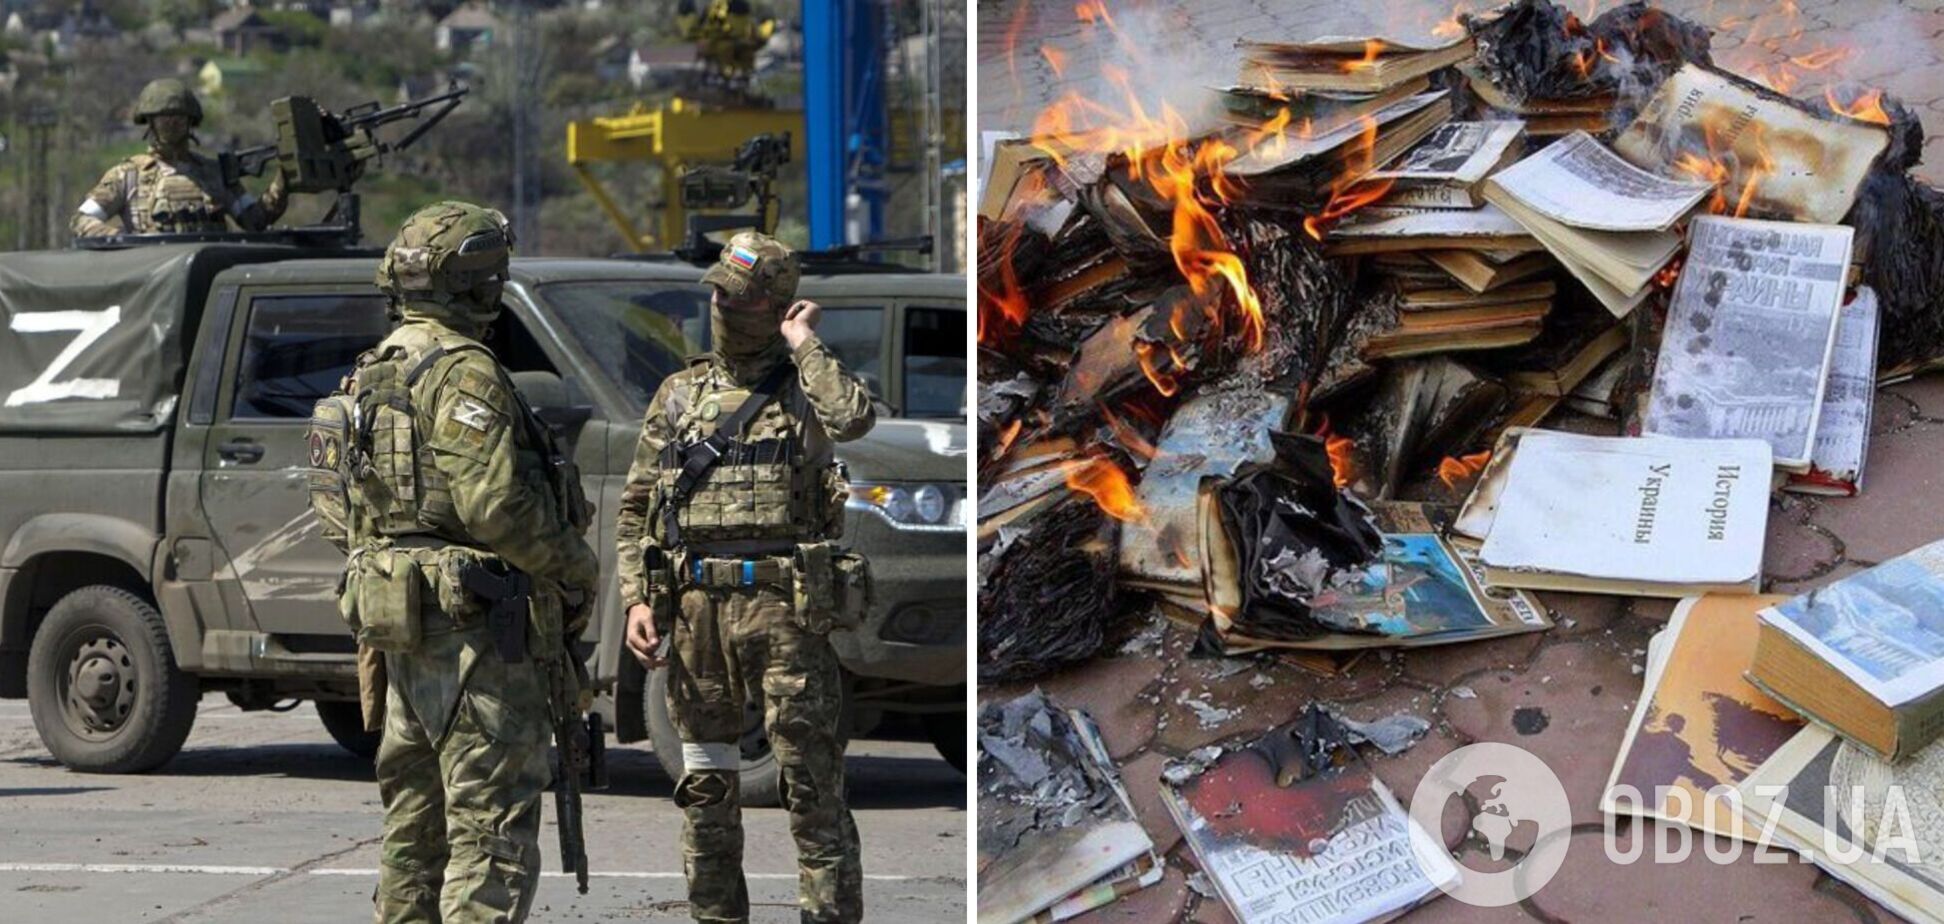 Российские оккупанты сжигают украинские книги, в том числе и учебники по истории. Фото